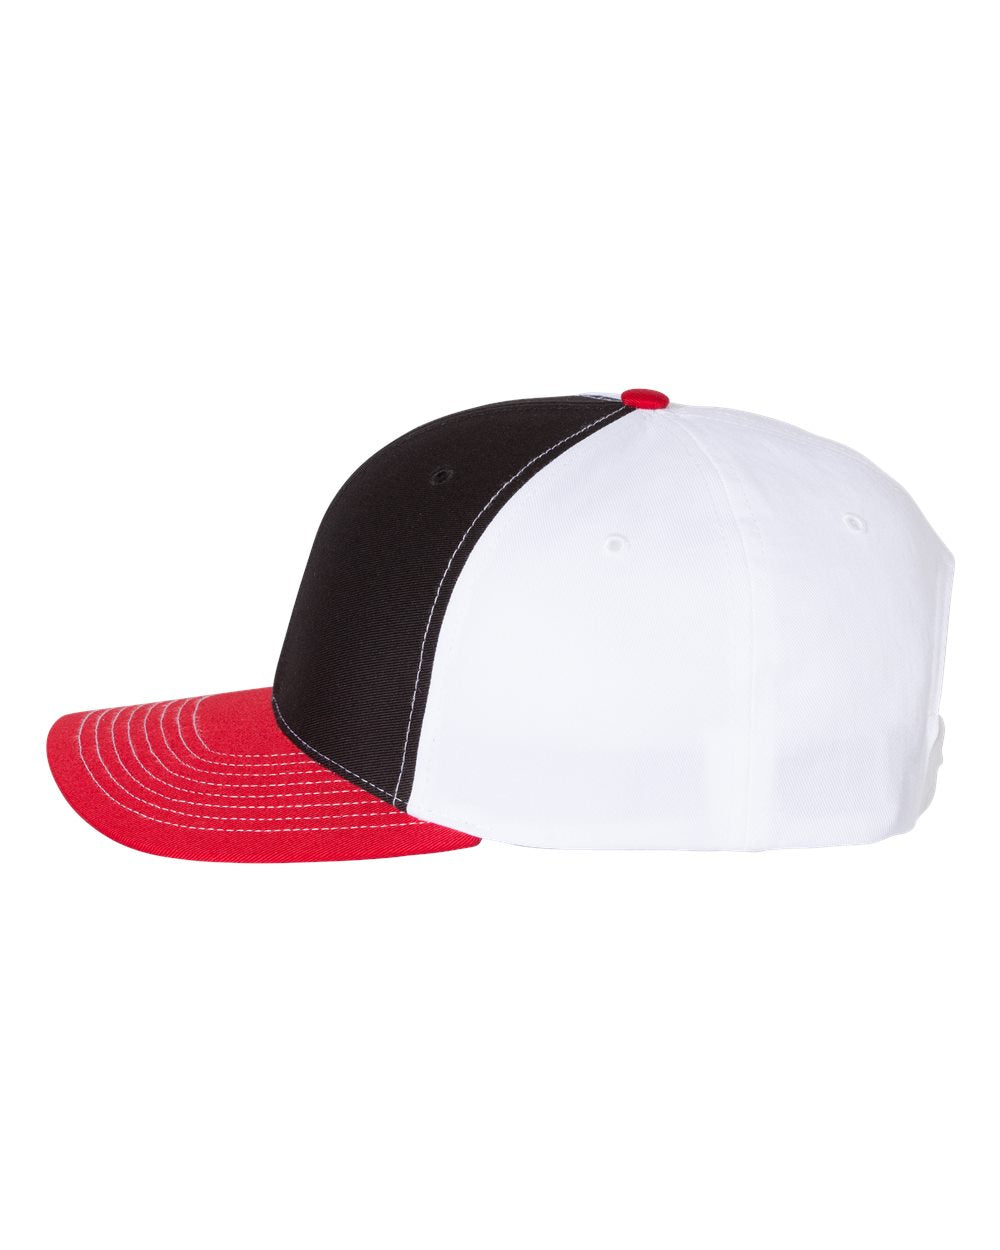 Richardson Twill Back Custom Trucker Caps, Black White Red